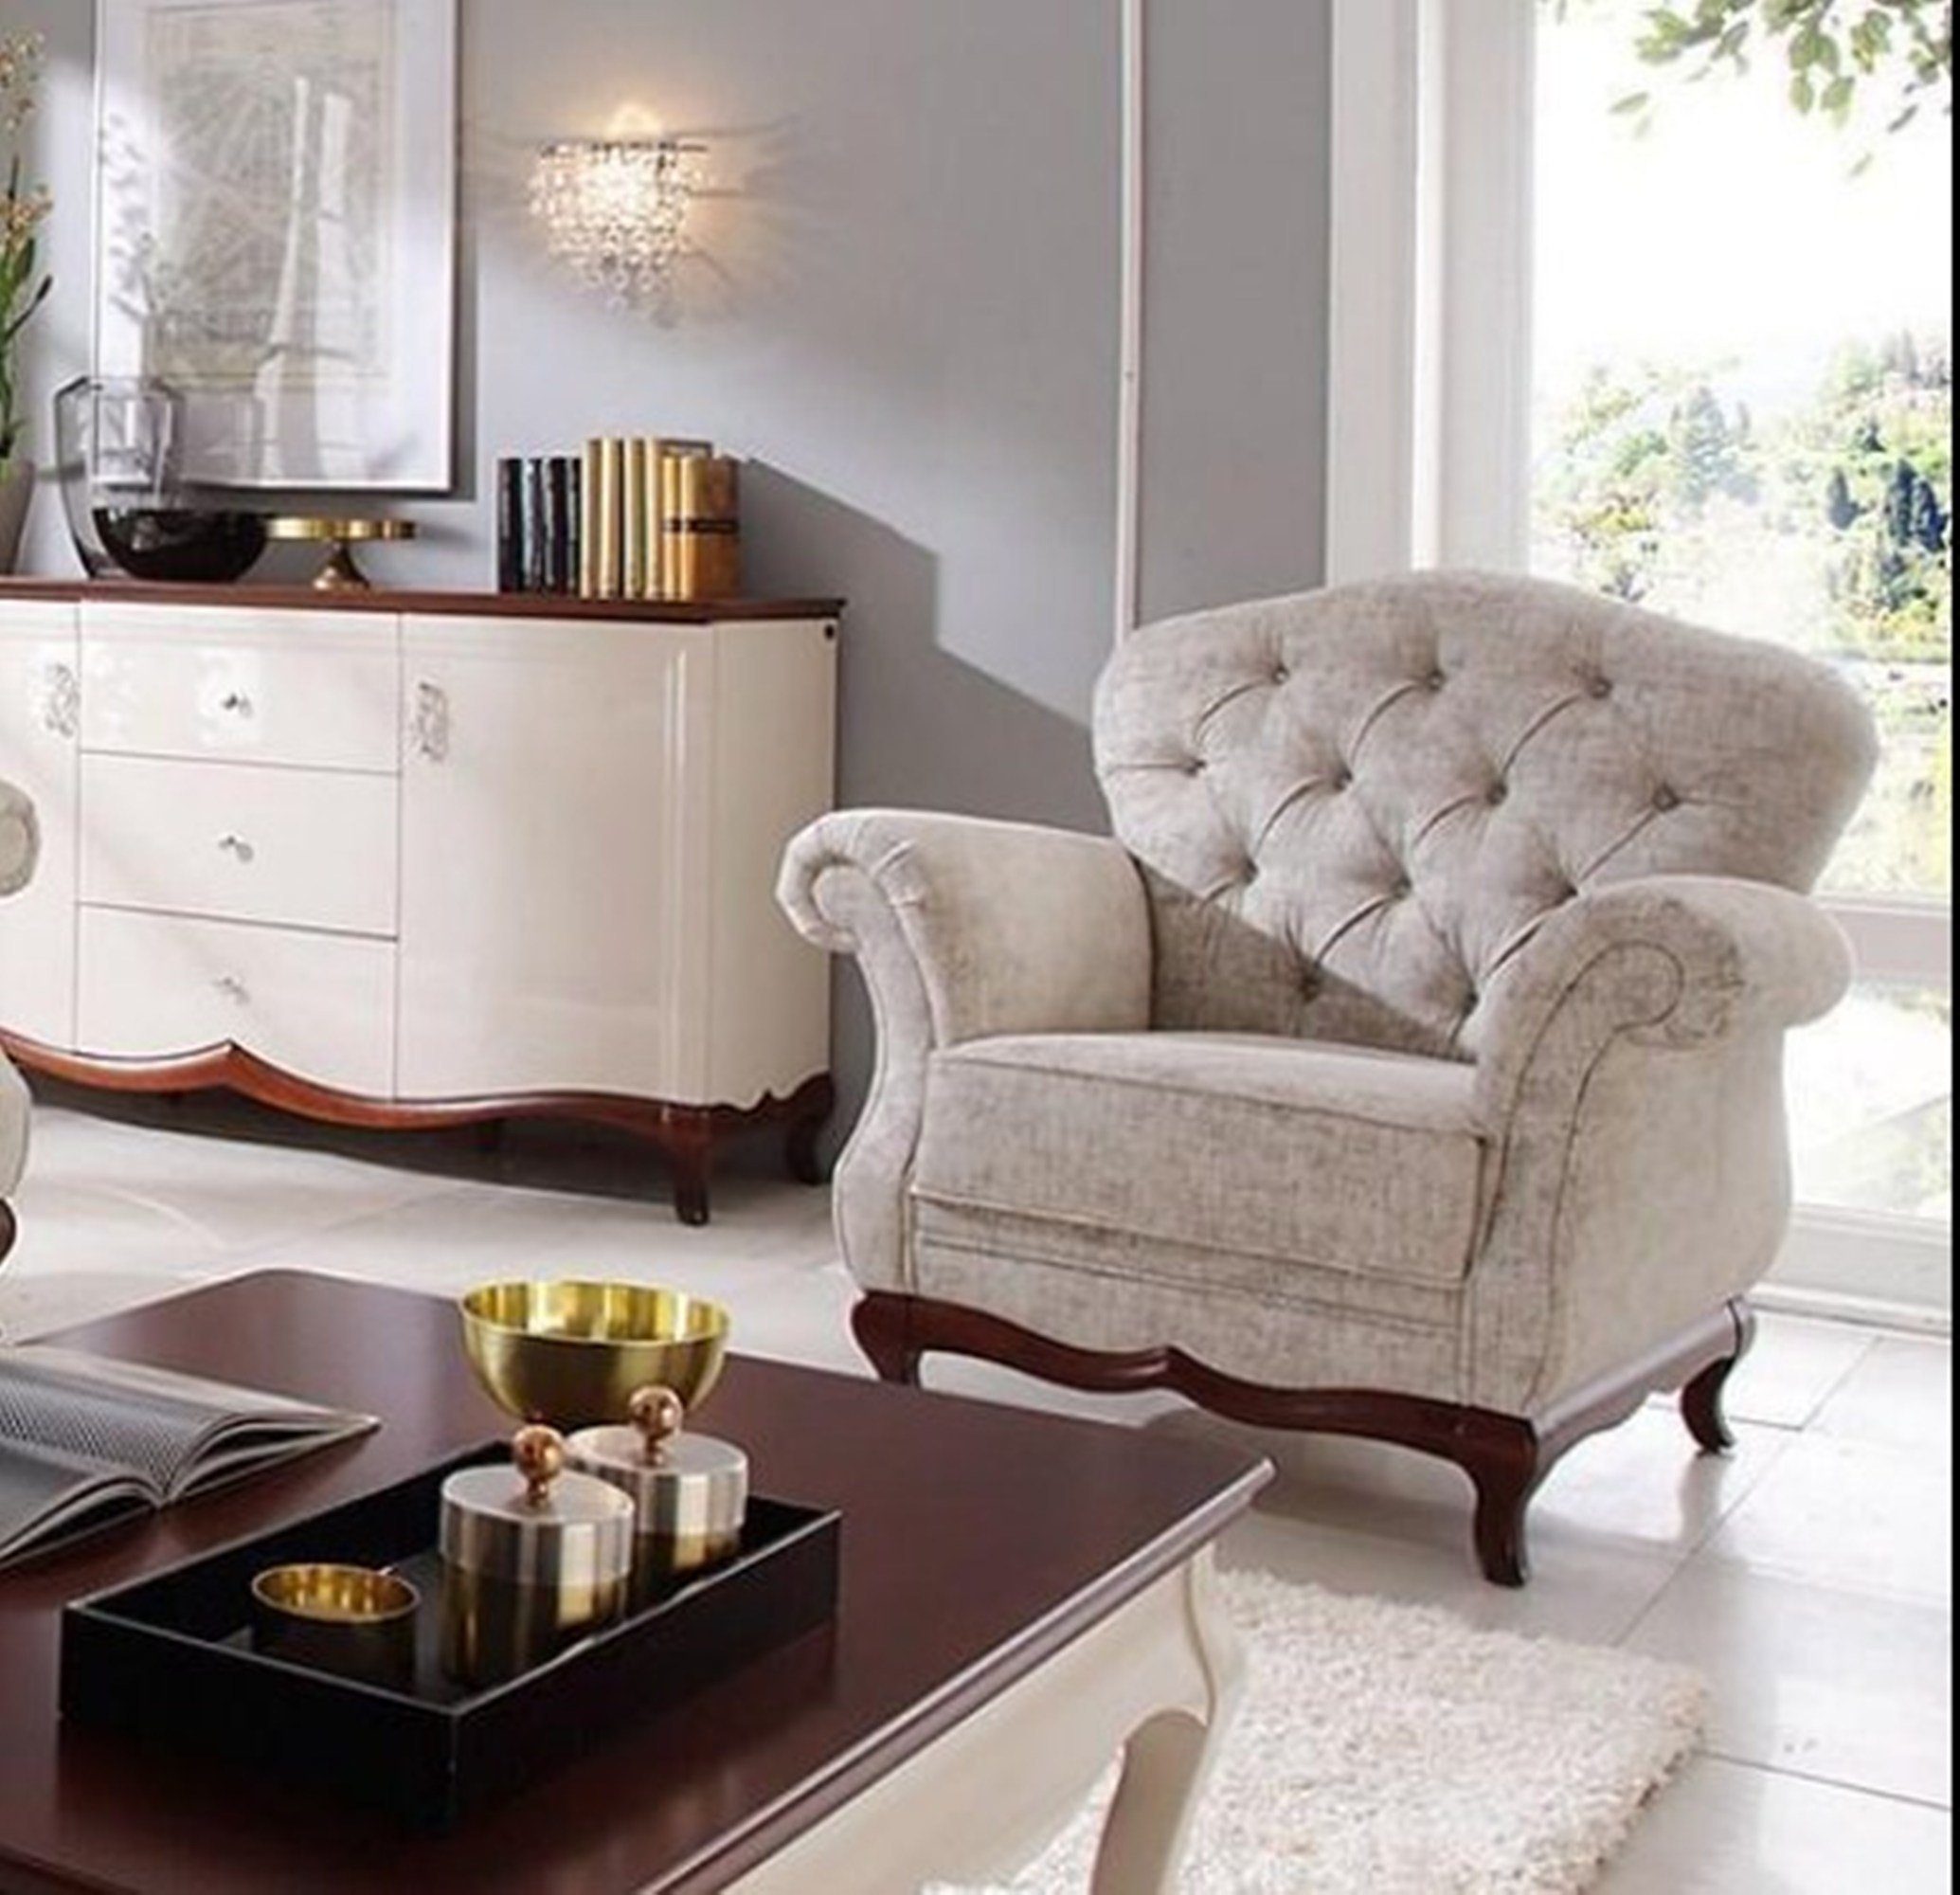 JVmoebel Sessel, Lounge Luxus Stuhl Fernseh Sessel Polster Polstersessel Moderner Designer Relax